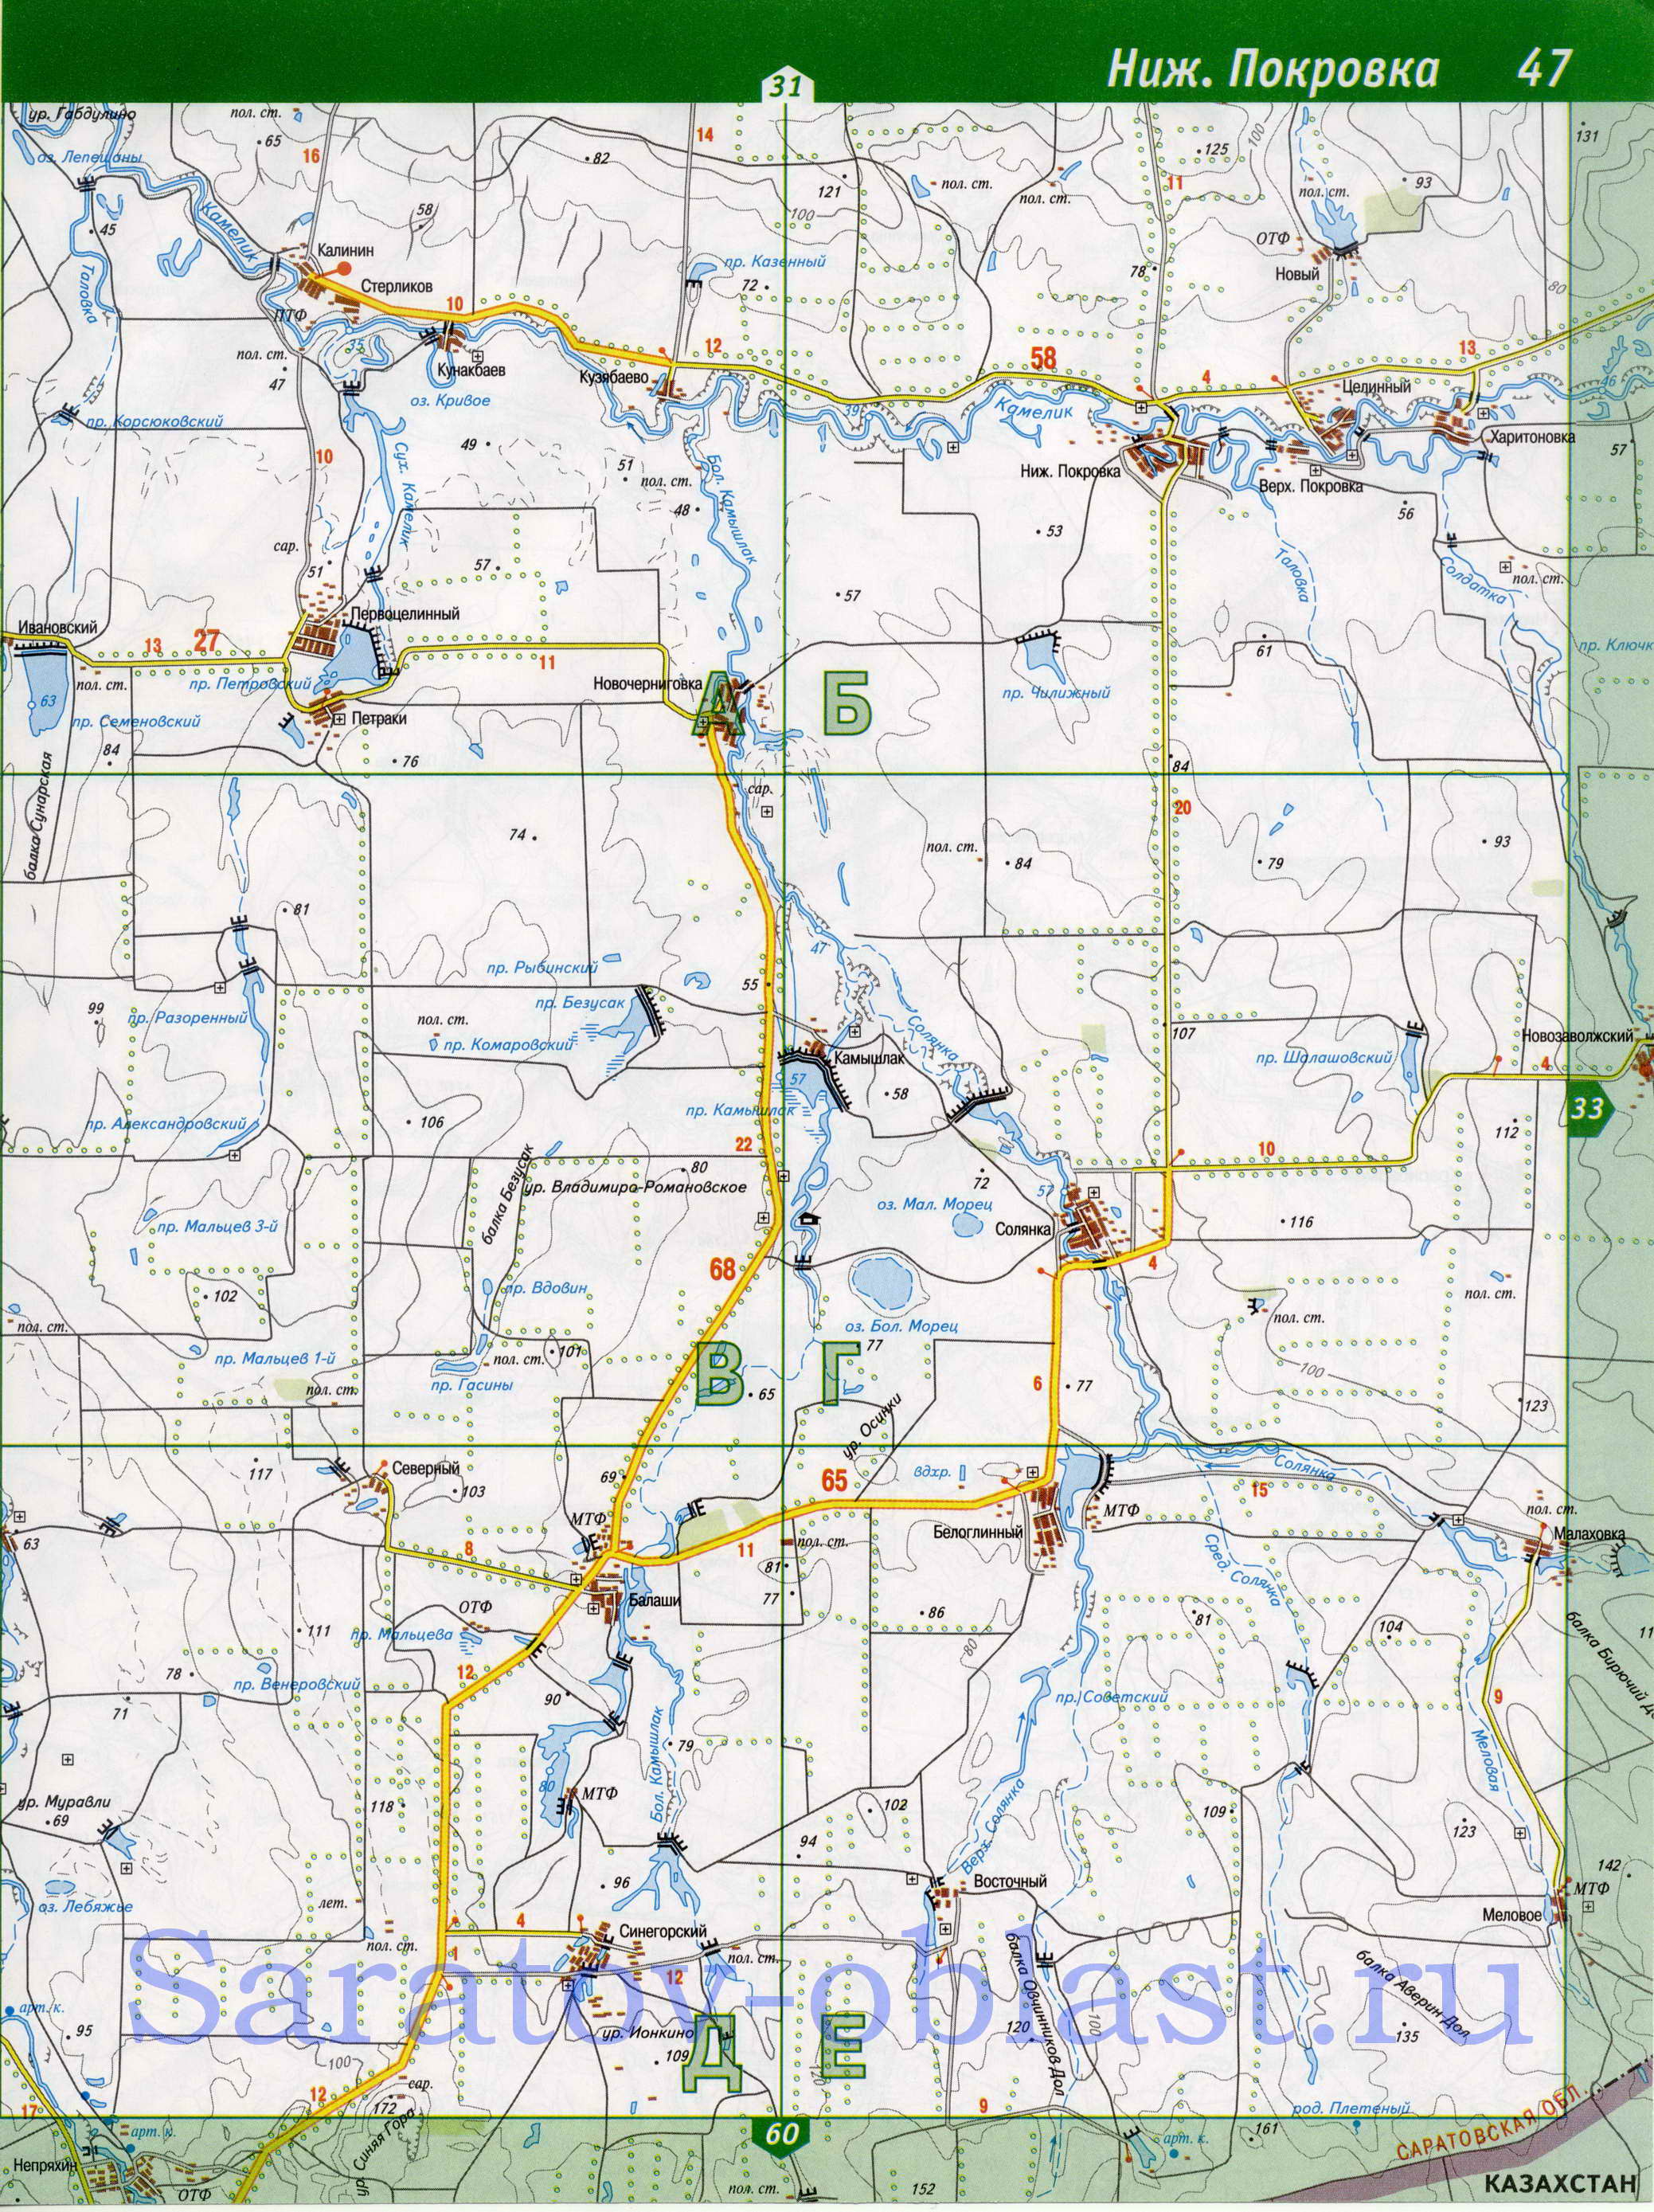 Карта Перелюбского района. Подробная топографическая карта - Перелюбский район, Саратовская область, A1 - 